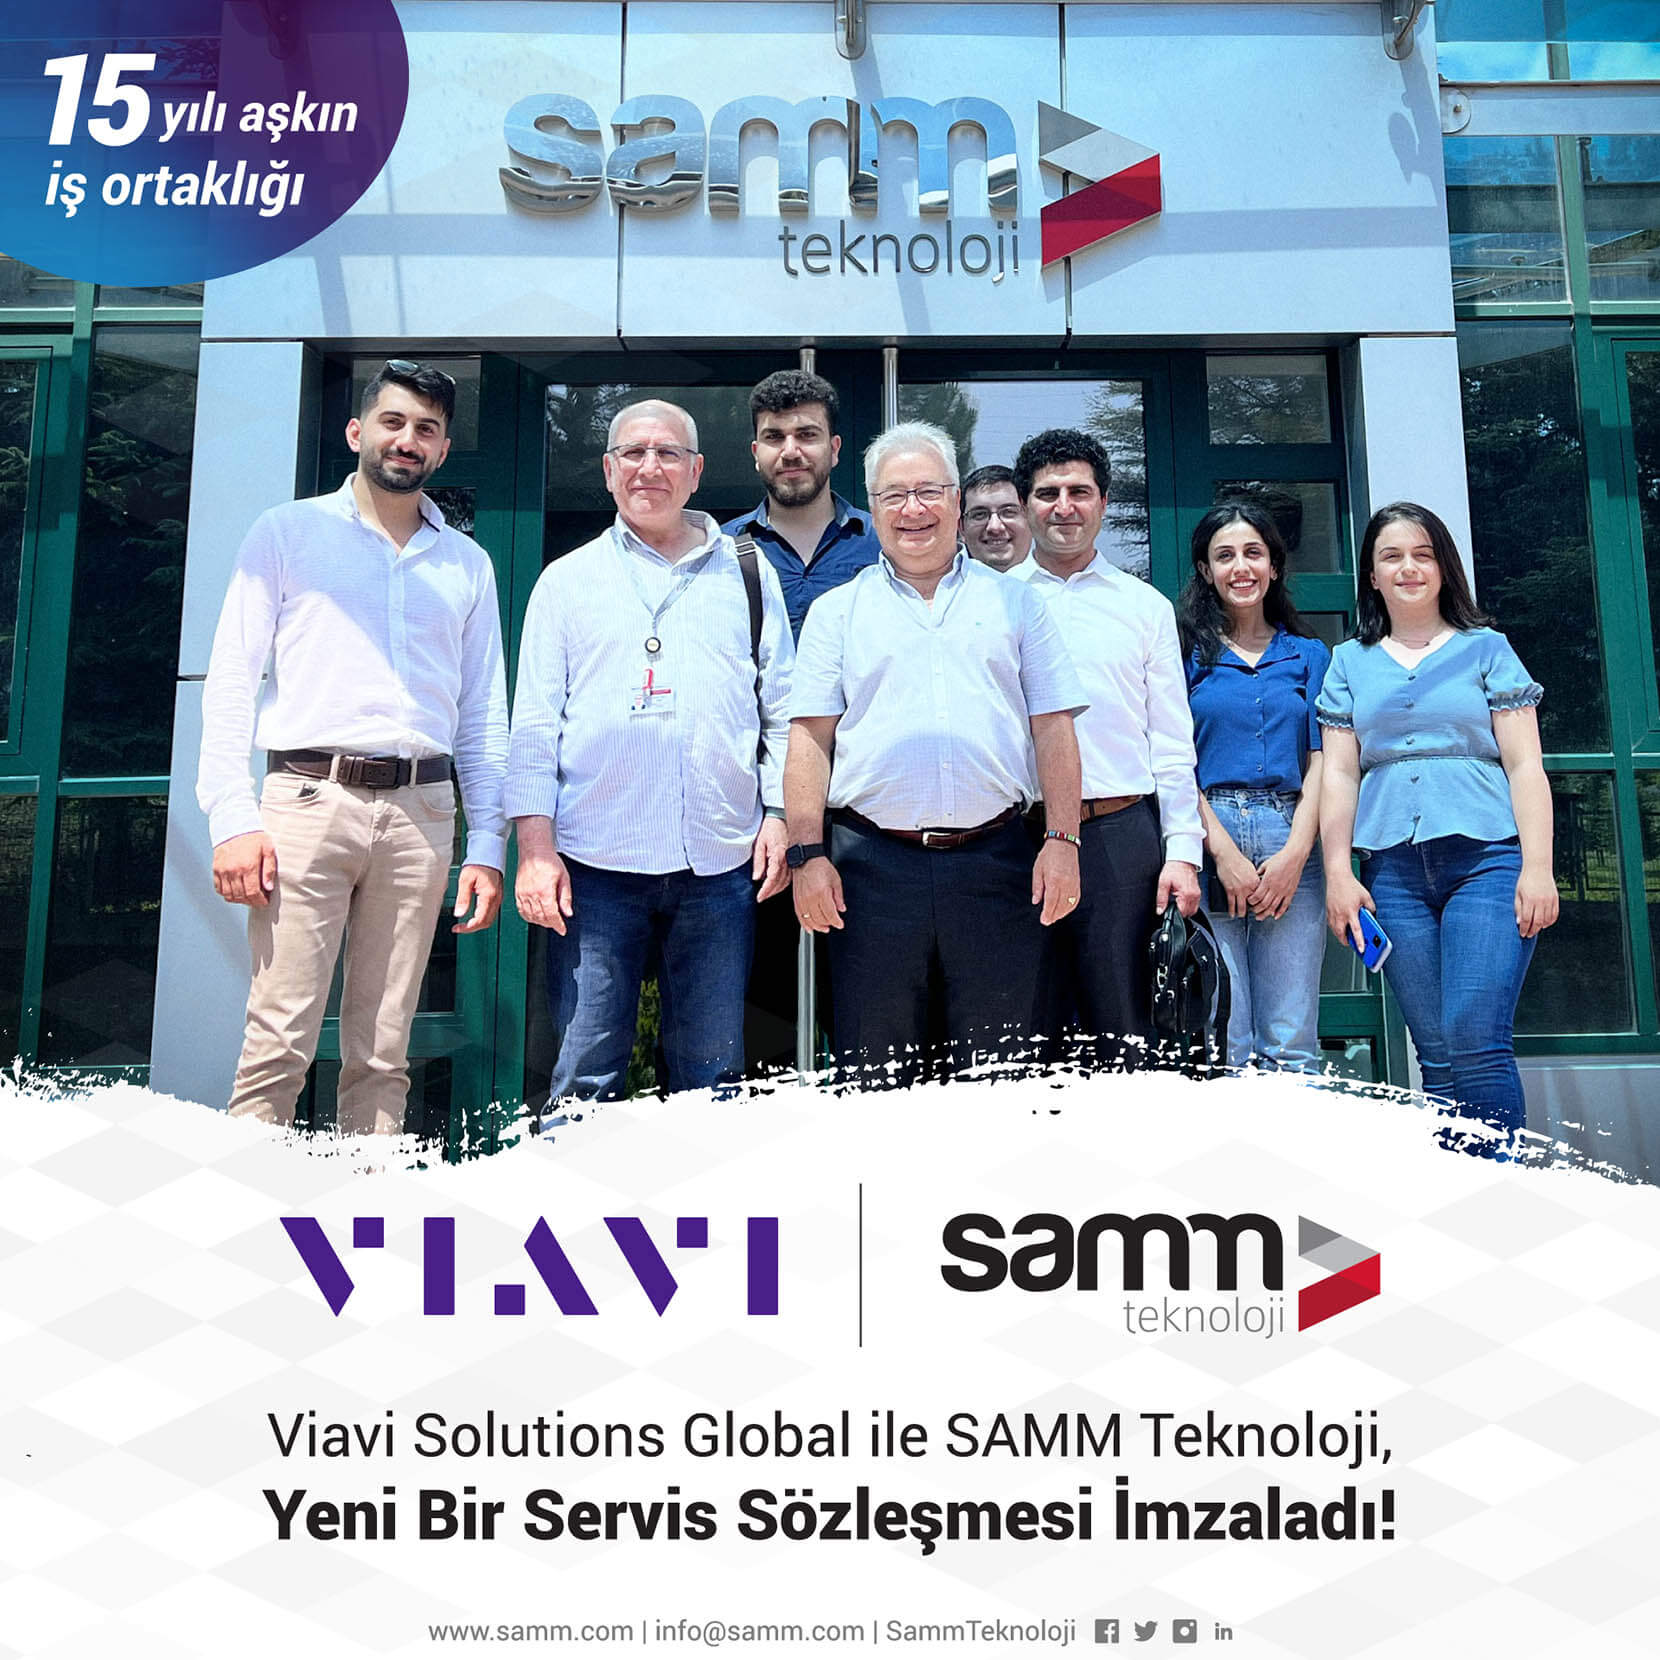 VIAVI Solutions Global ile SAMM Teknoloji, Yeni Bir Servis Sözleşmesi İmzaladı!